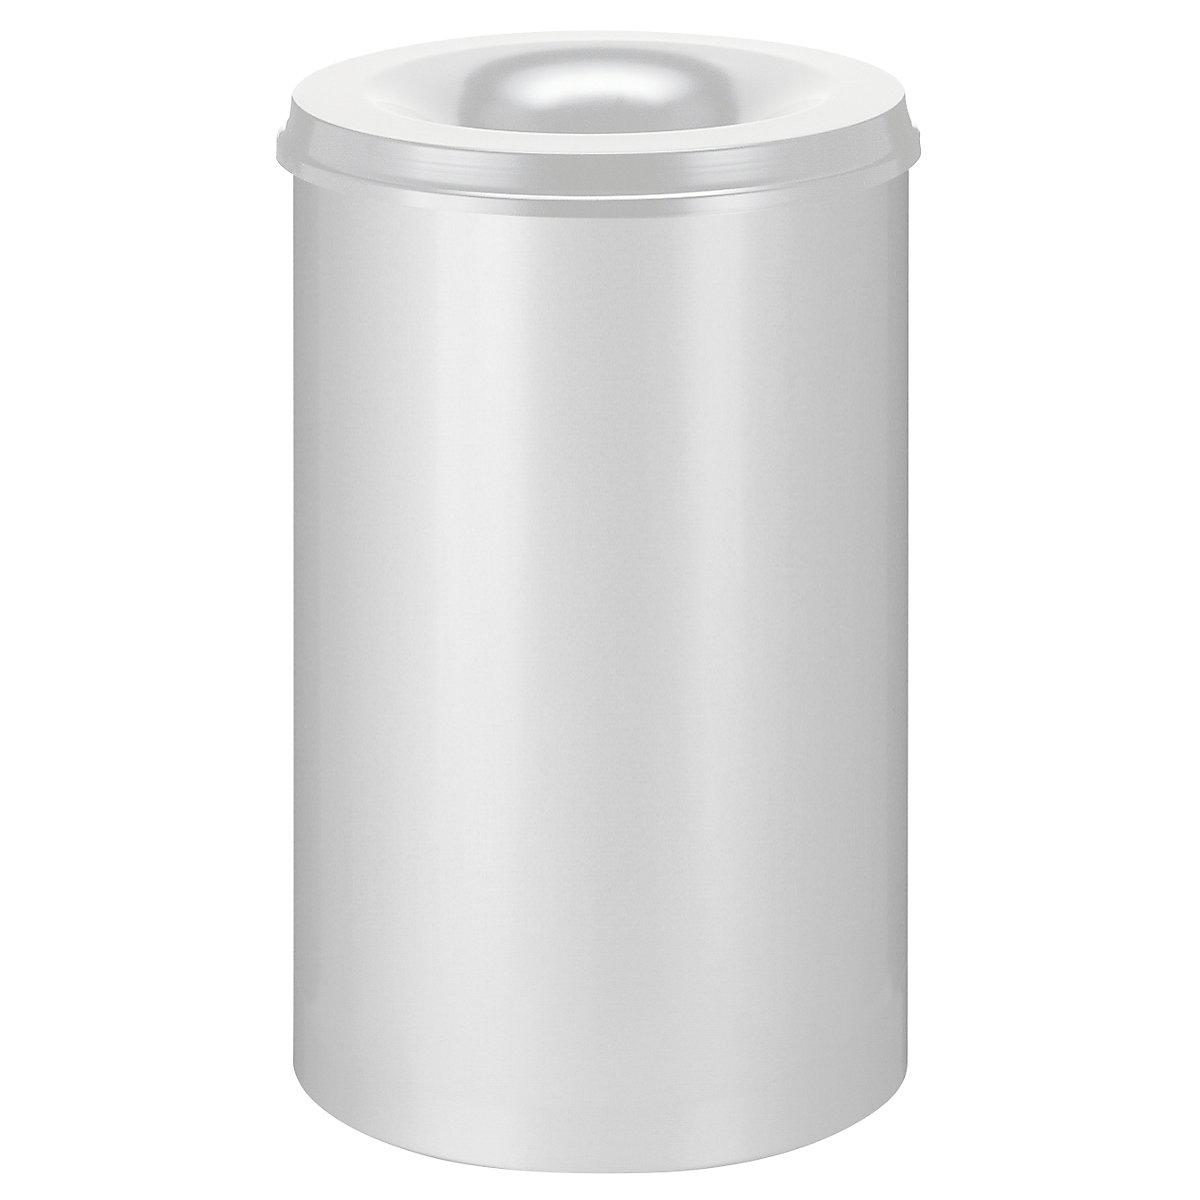 Corbeille à papier auto-extinguible, capacité 110 l, h x Ø 720 x 470 mm, corps gris / étouffoir gris